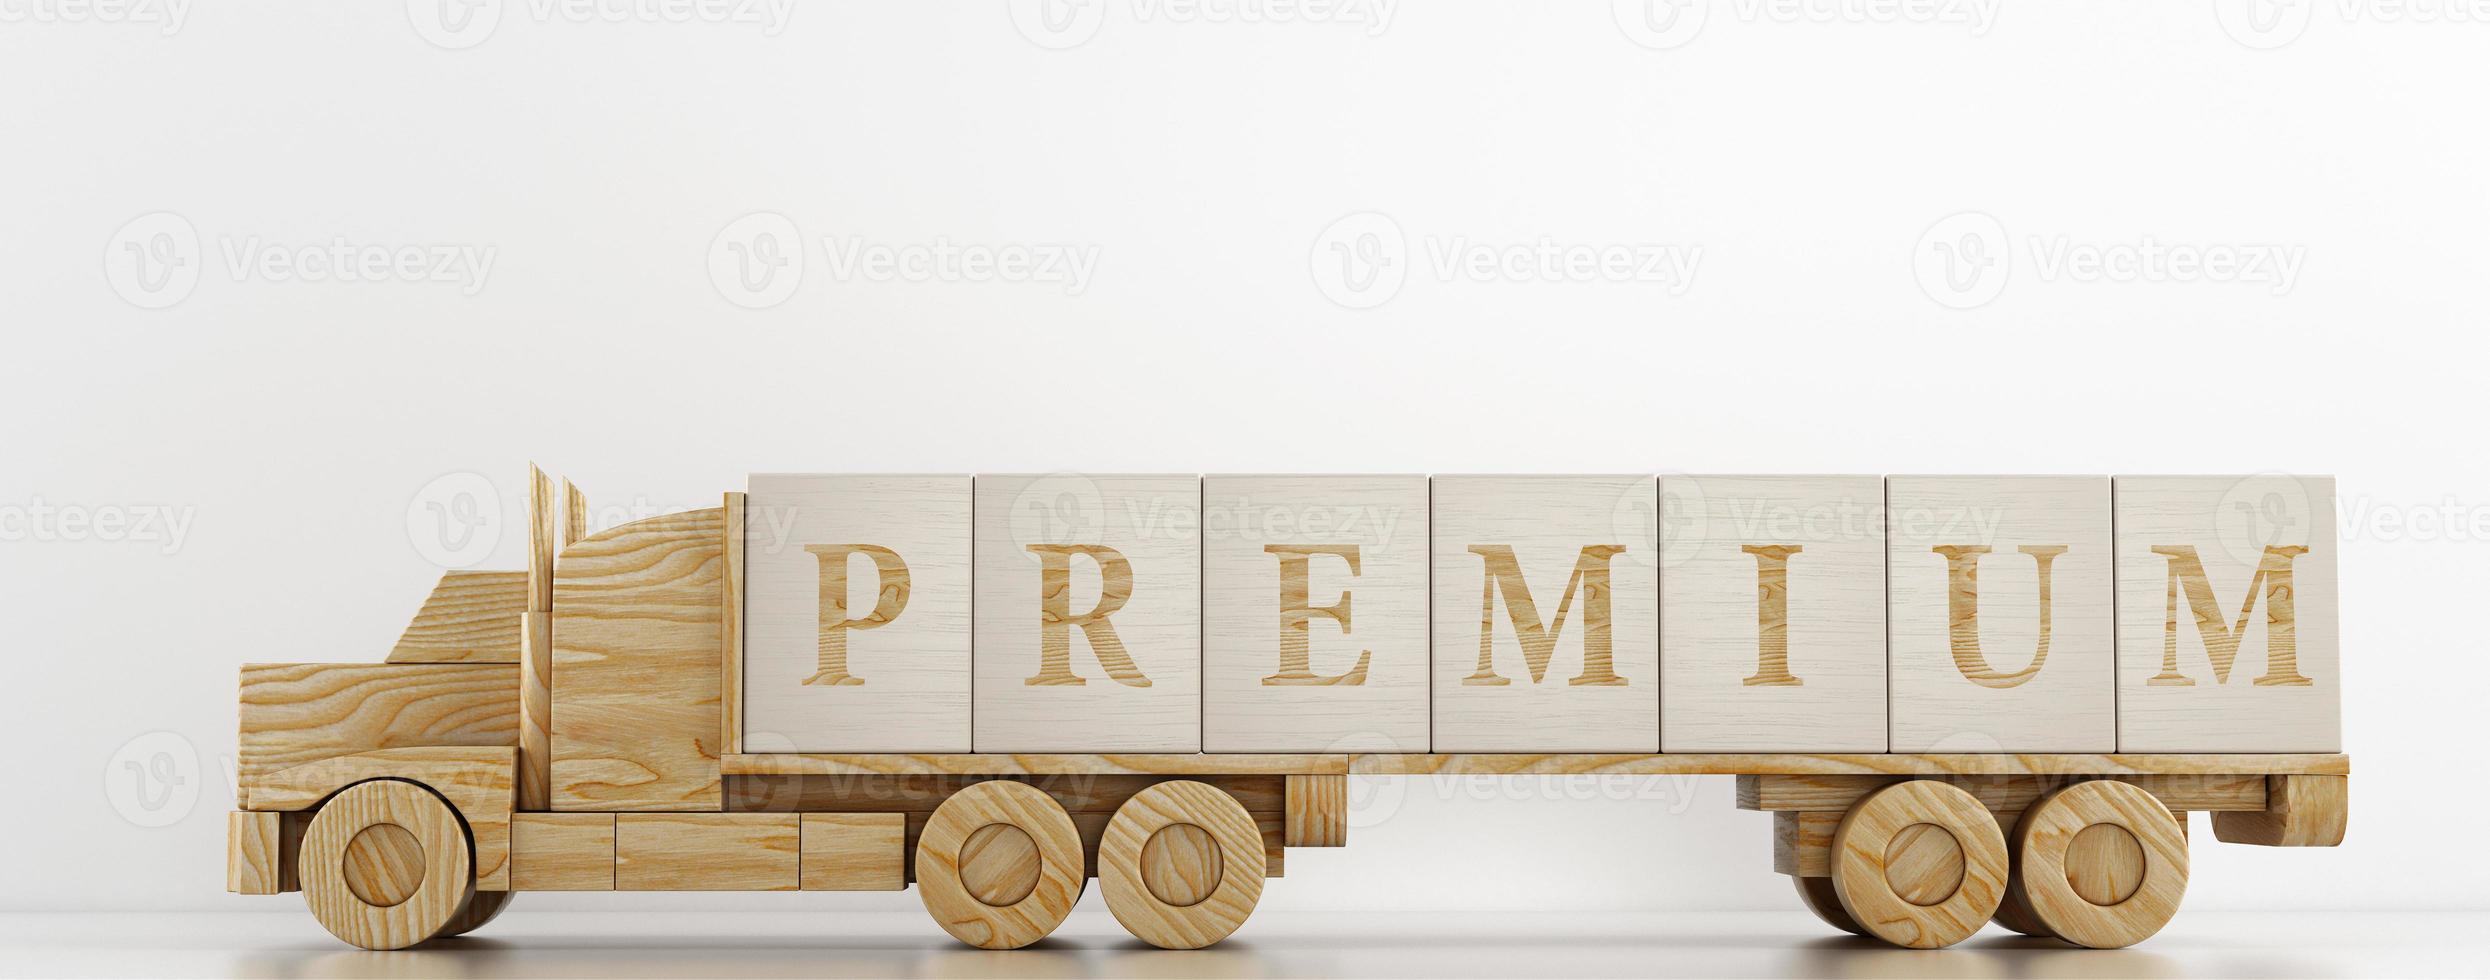 giocattolo camion trasporti grande di legno cubi per pubblicizzare il servizio offerto foto